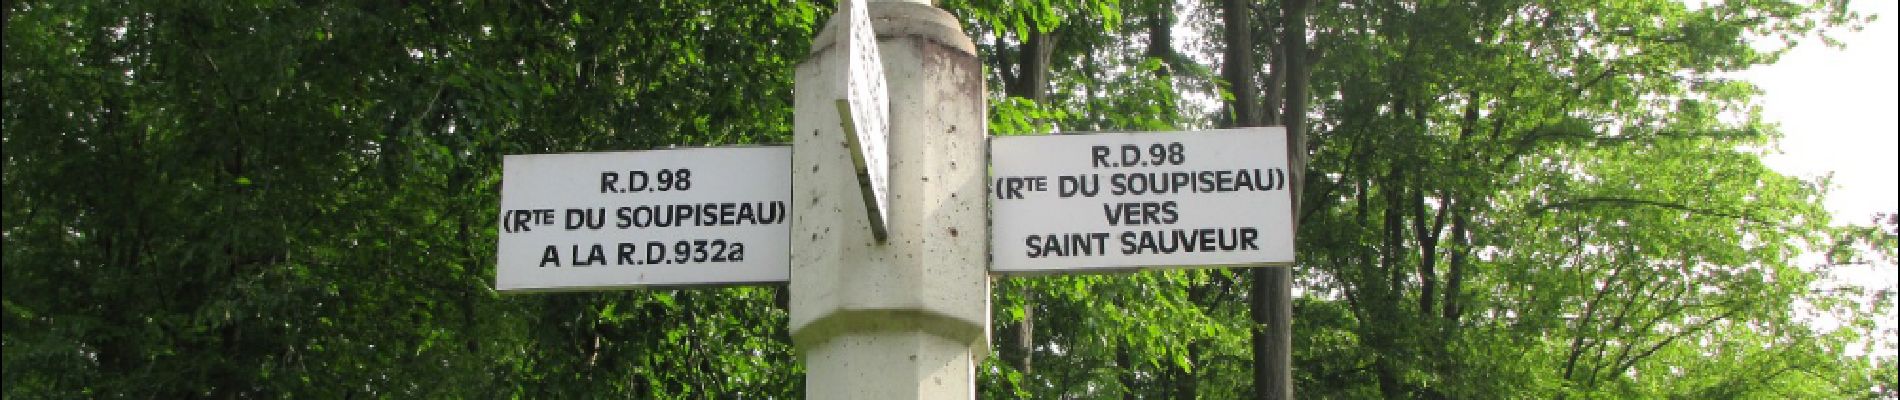 Point d'intérêt Saint-Sauveur - Point 15 - Photo